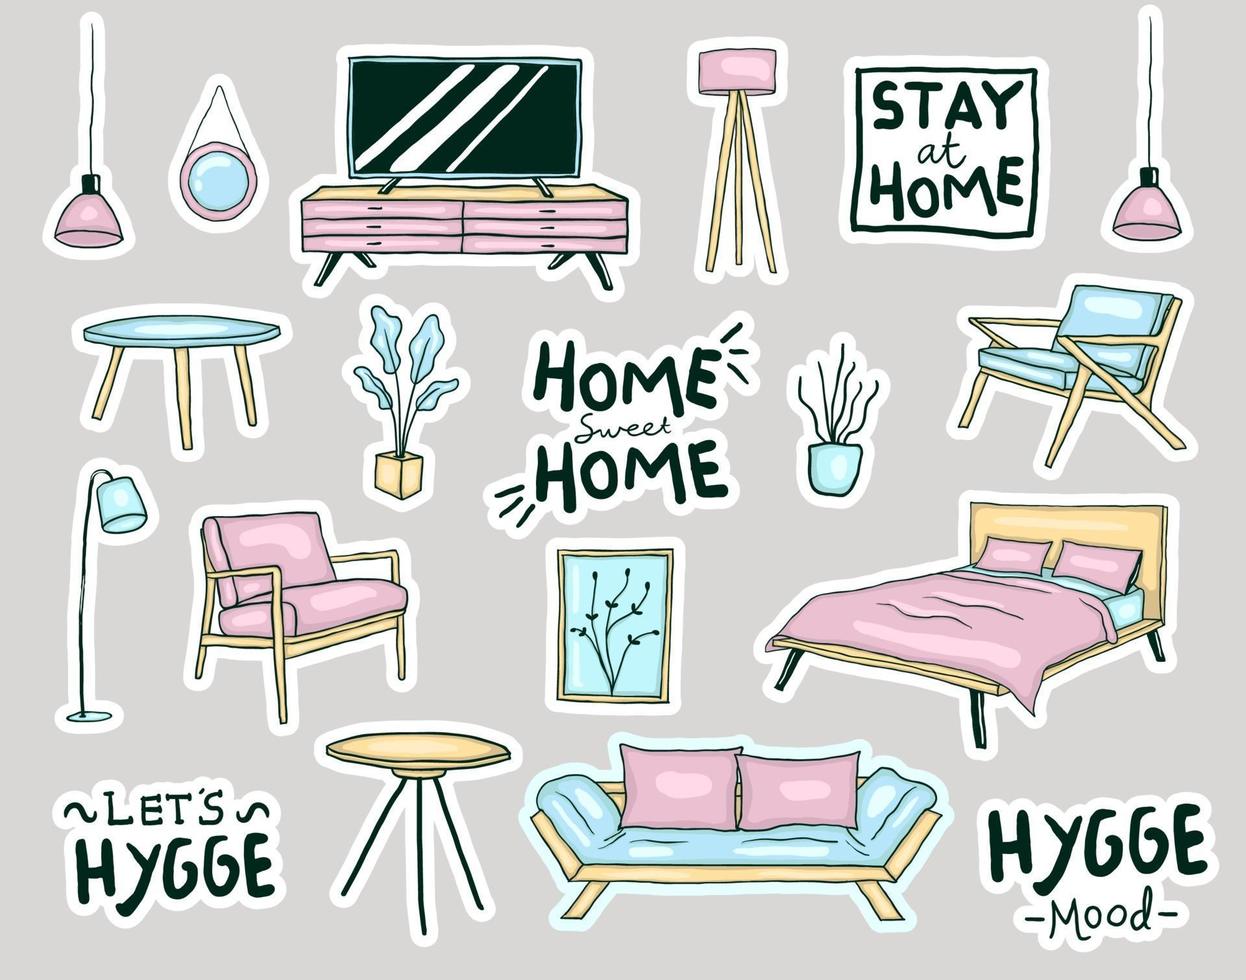 colorida colección de pegatinas de muebles para el hogar estilo hygge dibujadas a mano vector